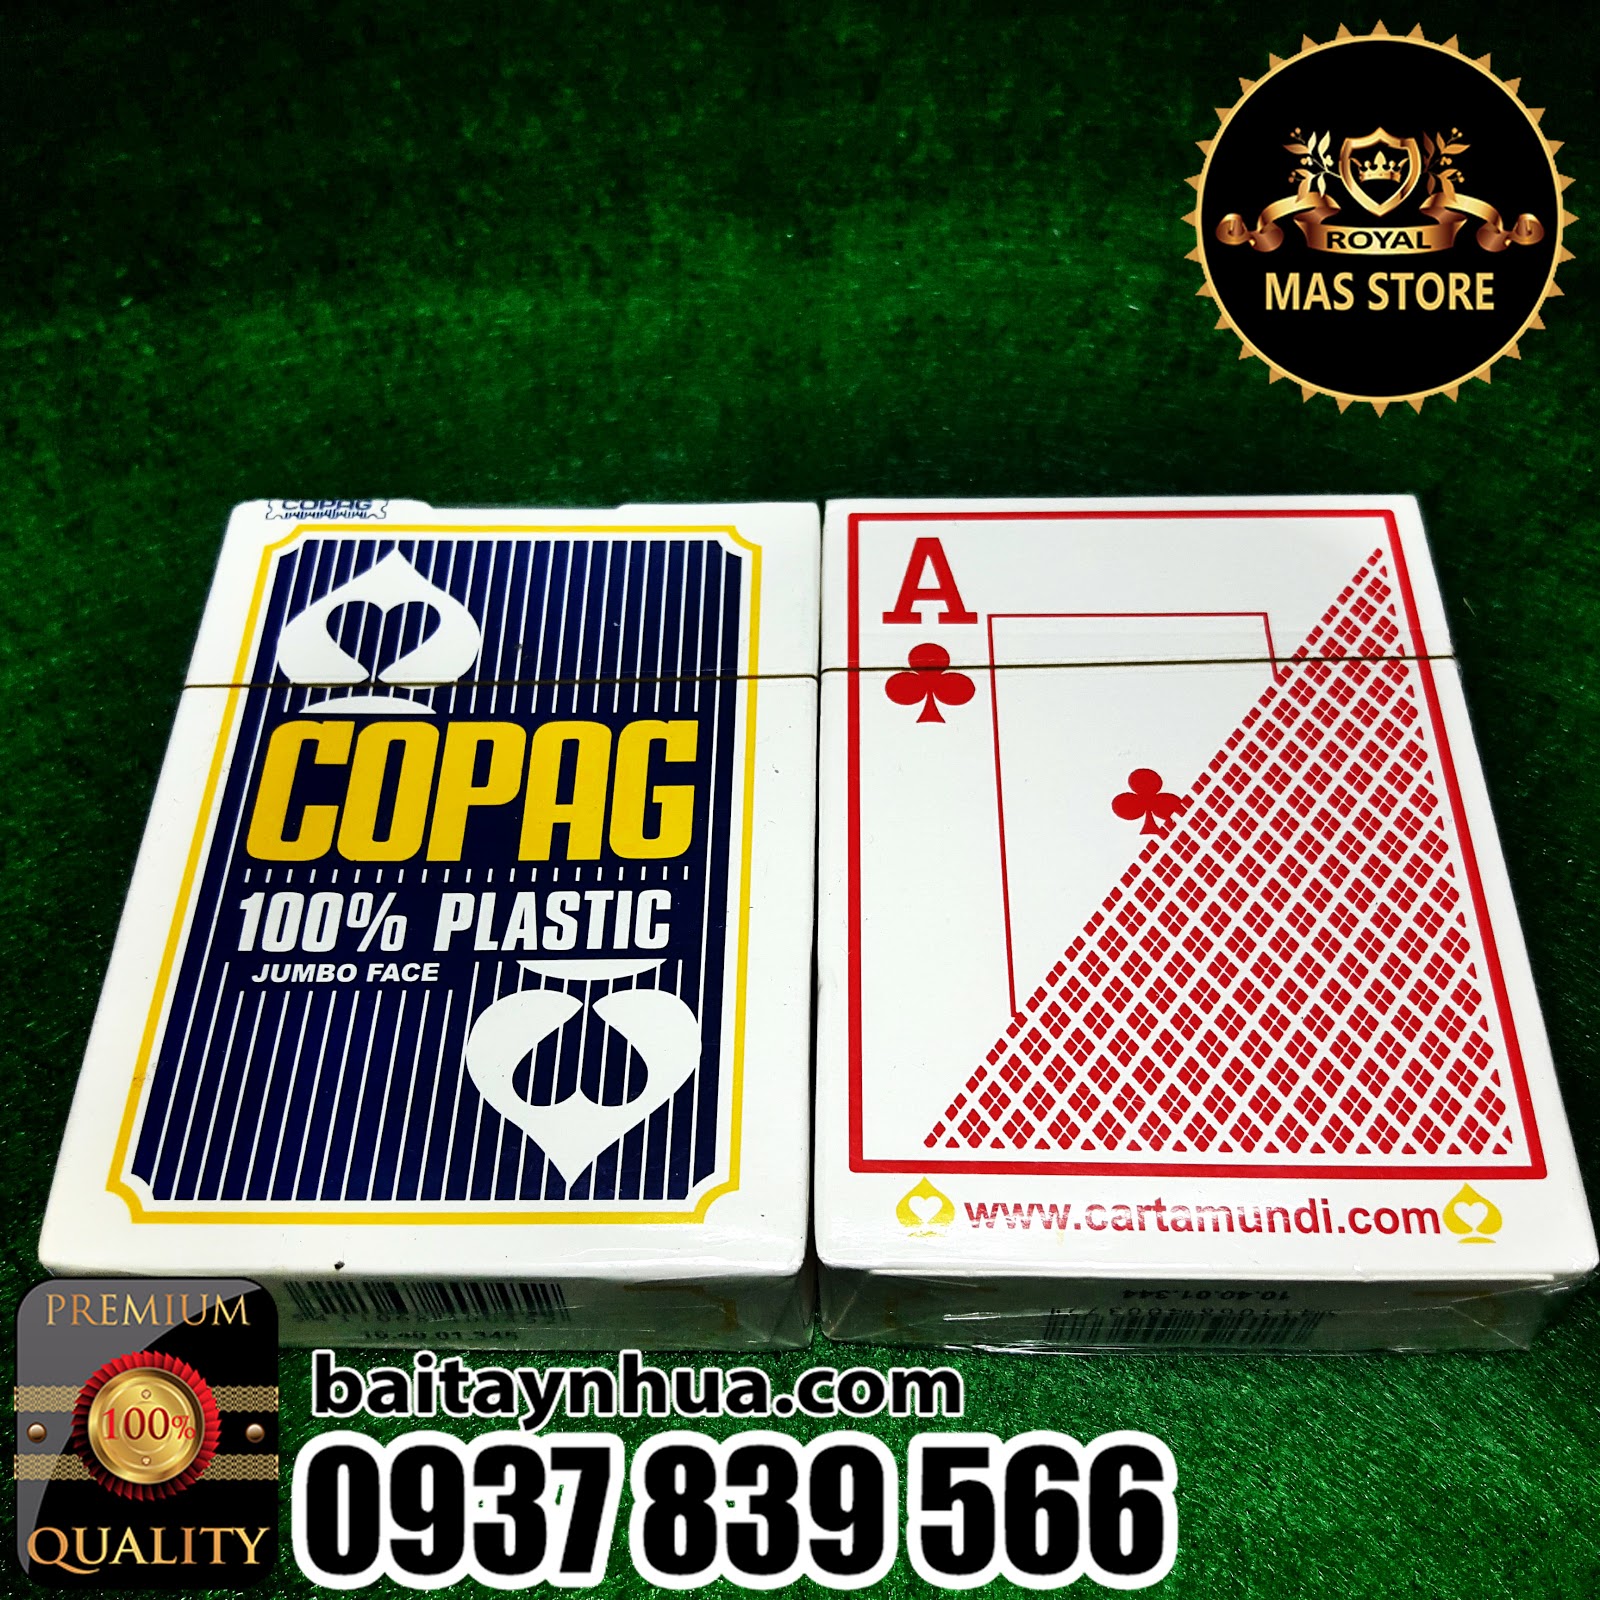 Bài Poker Stars COPAG Nhựa Cao Cấp Cực Tốt - 100% Plastic - Chuẩn casino quốc tế. - 12